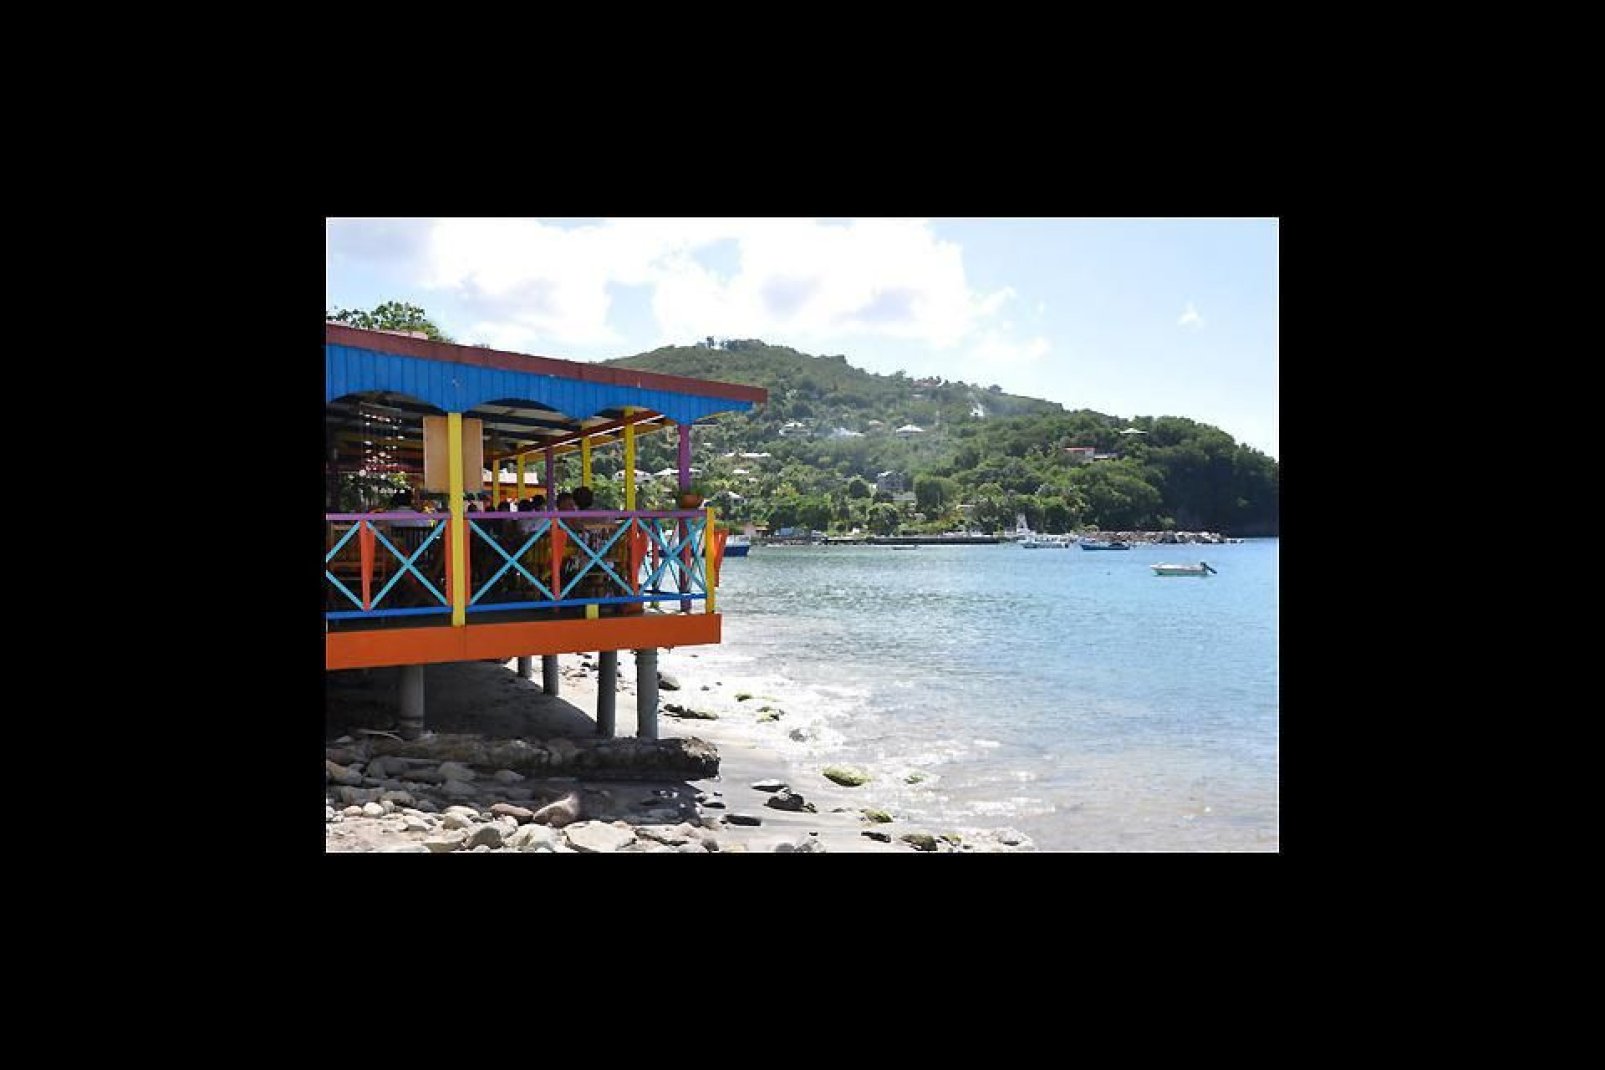 Deshaies ist ein typisches kleines Fischerdorf voller Charme auf Guadeloupe.